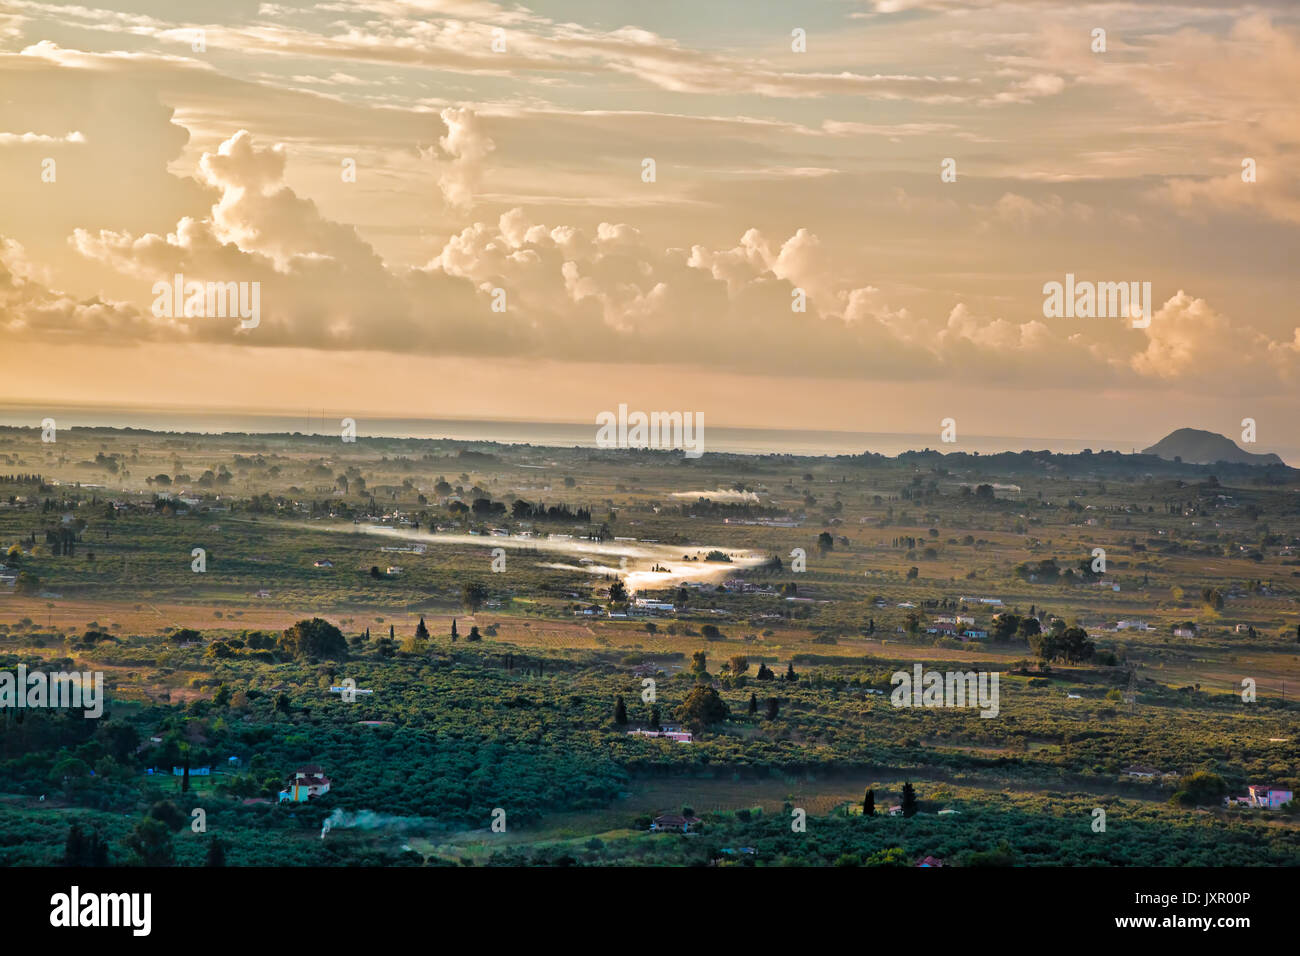 Zakynthos island with green fields in Greece Stock Photo